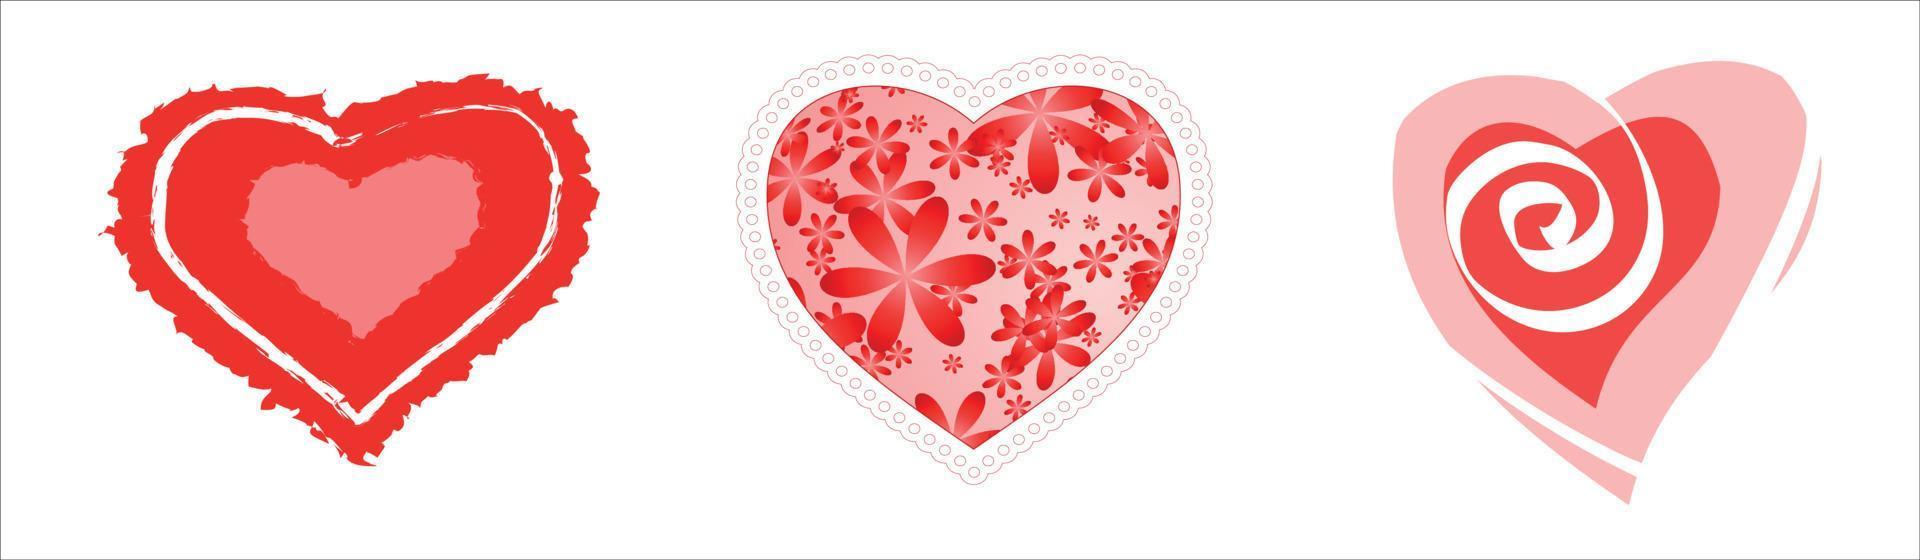 Valentijnsdag rode harten vector